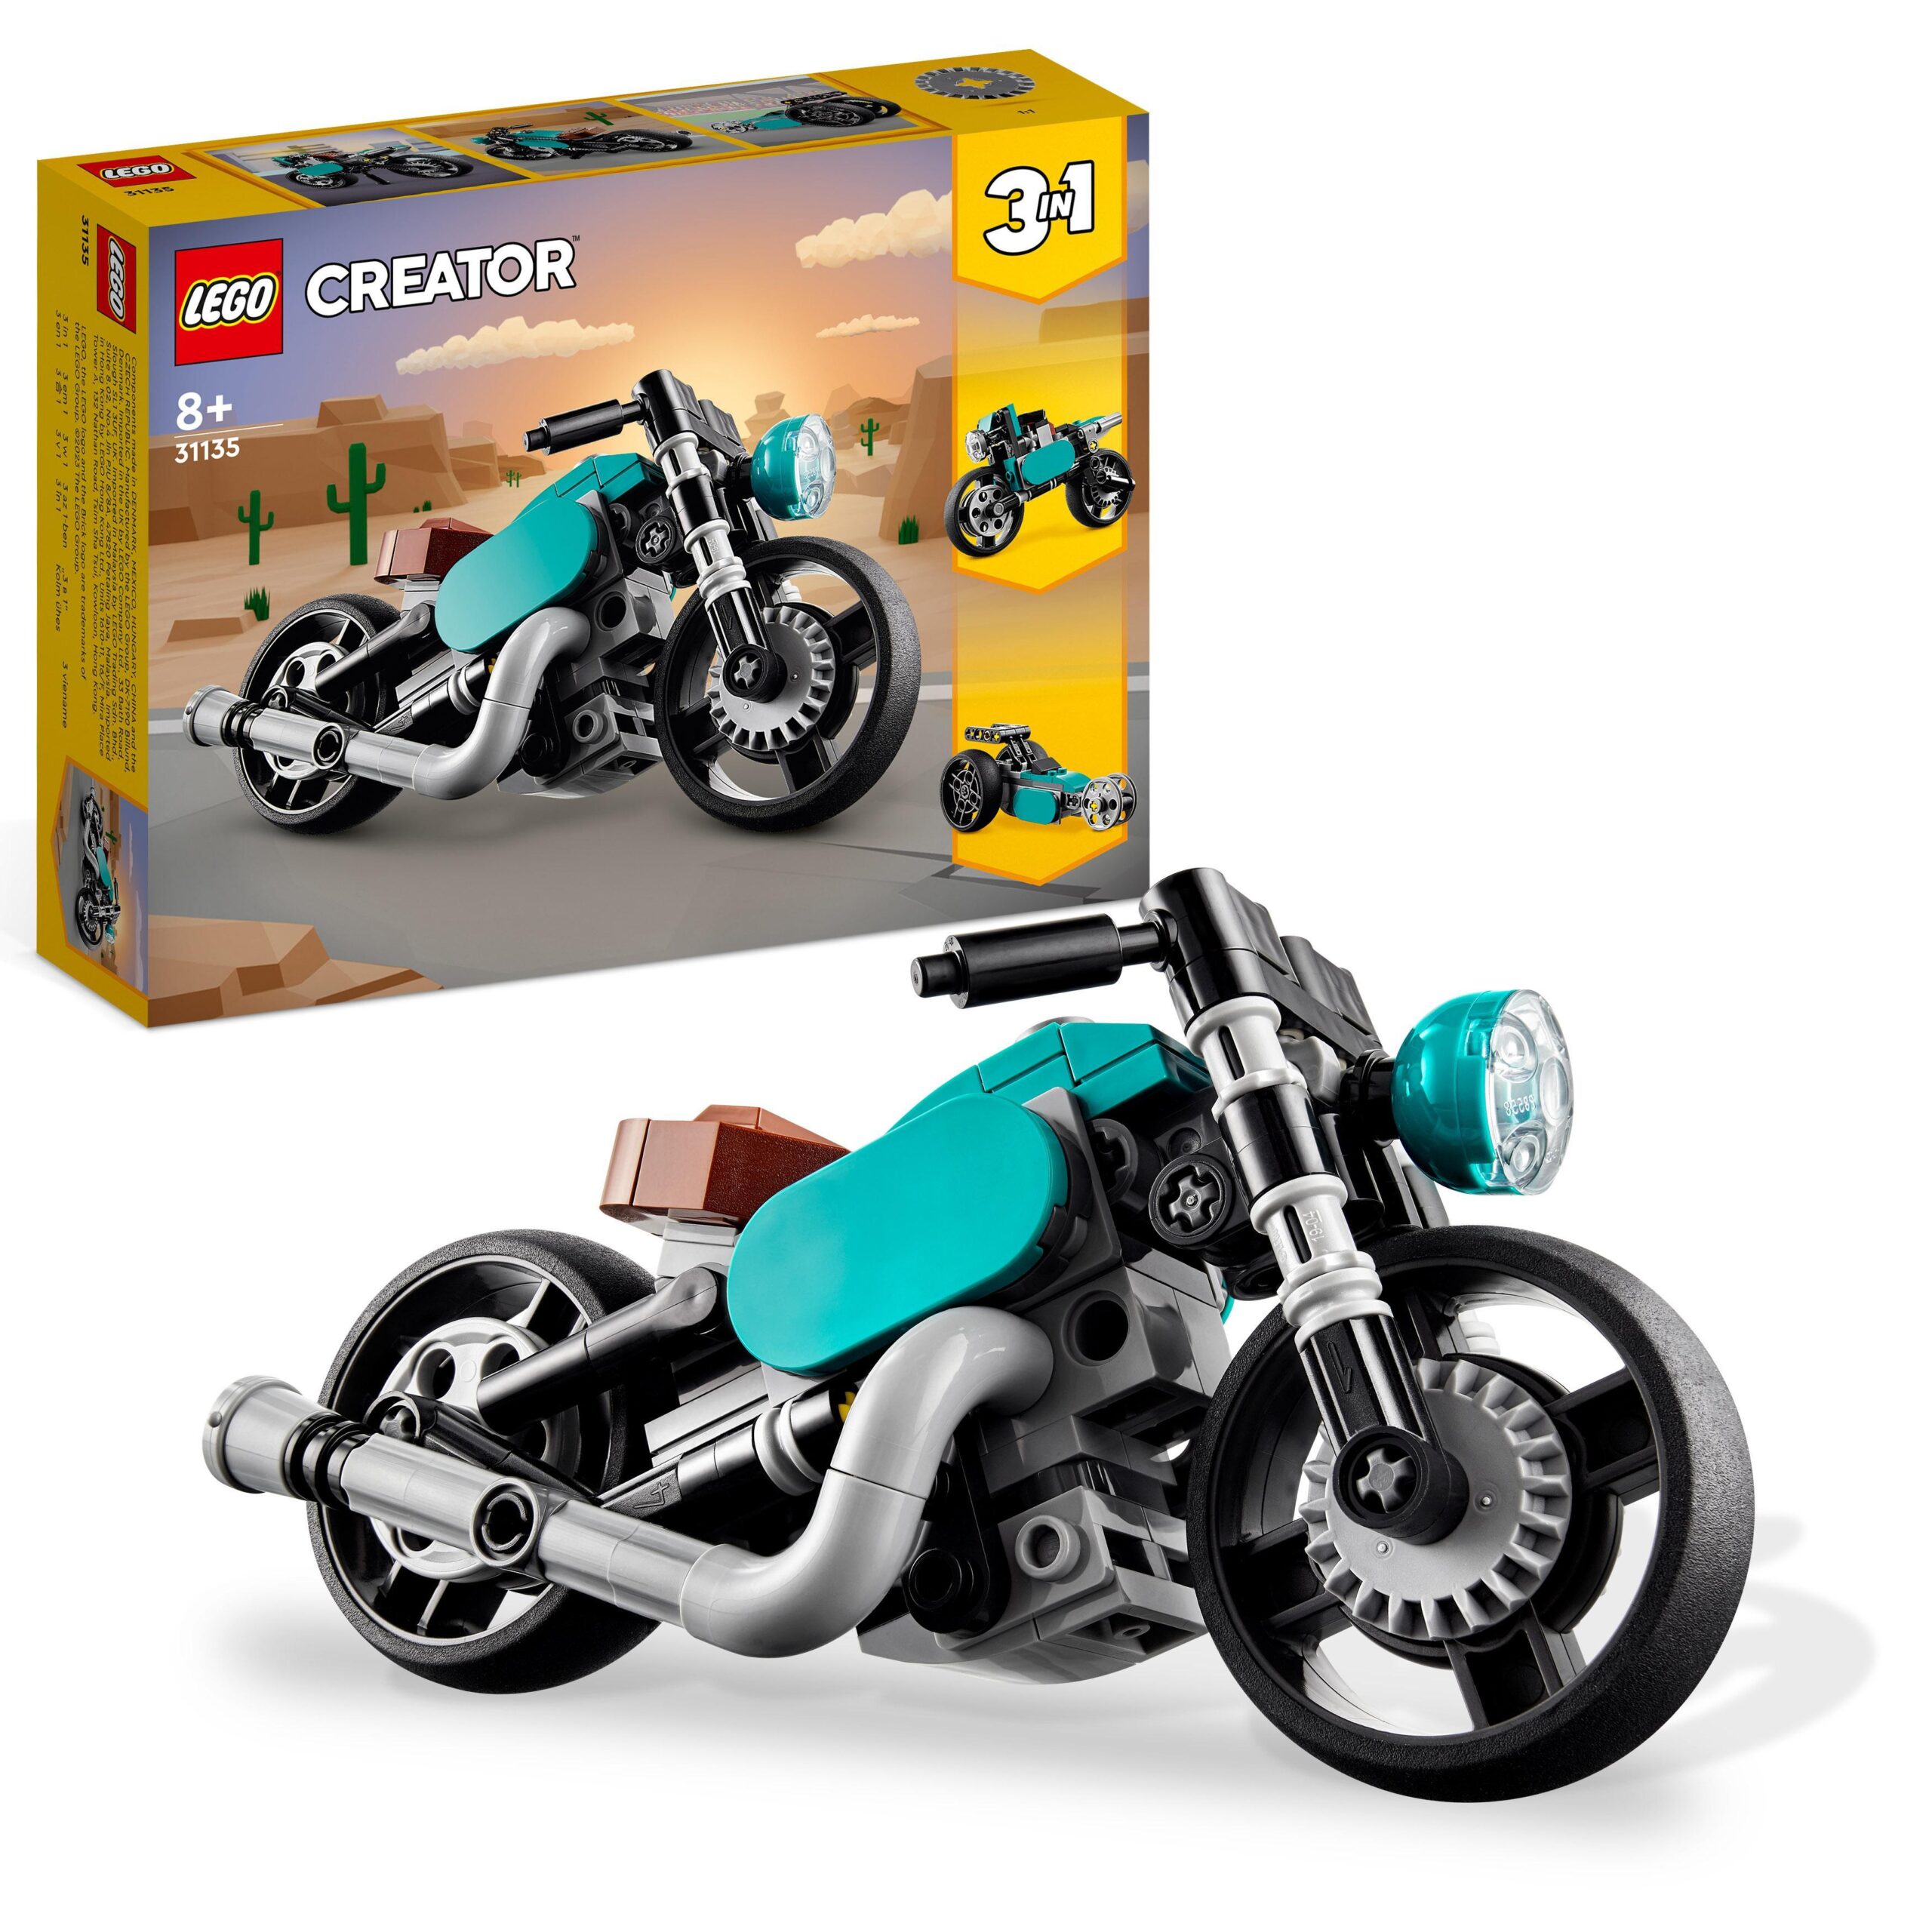 Lego creator 31135 motocicletta vintage, set 3 in 1 con moto giocattolo,  road bike e dragster, giochi creativi per bambini - Toys Center